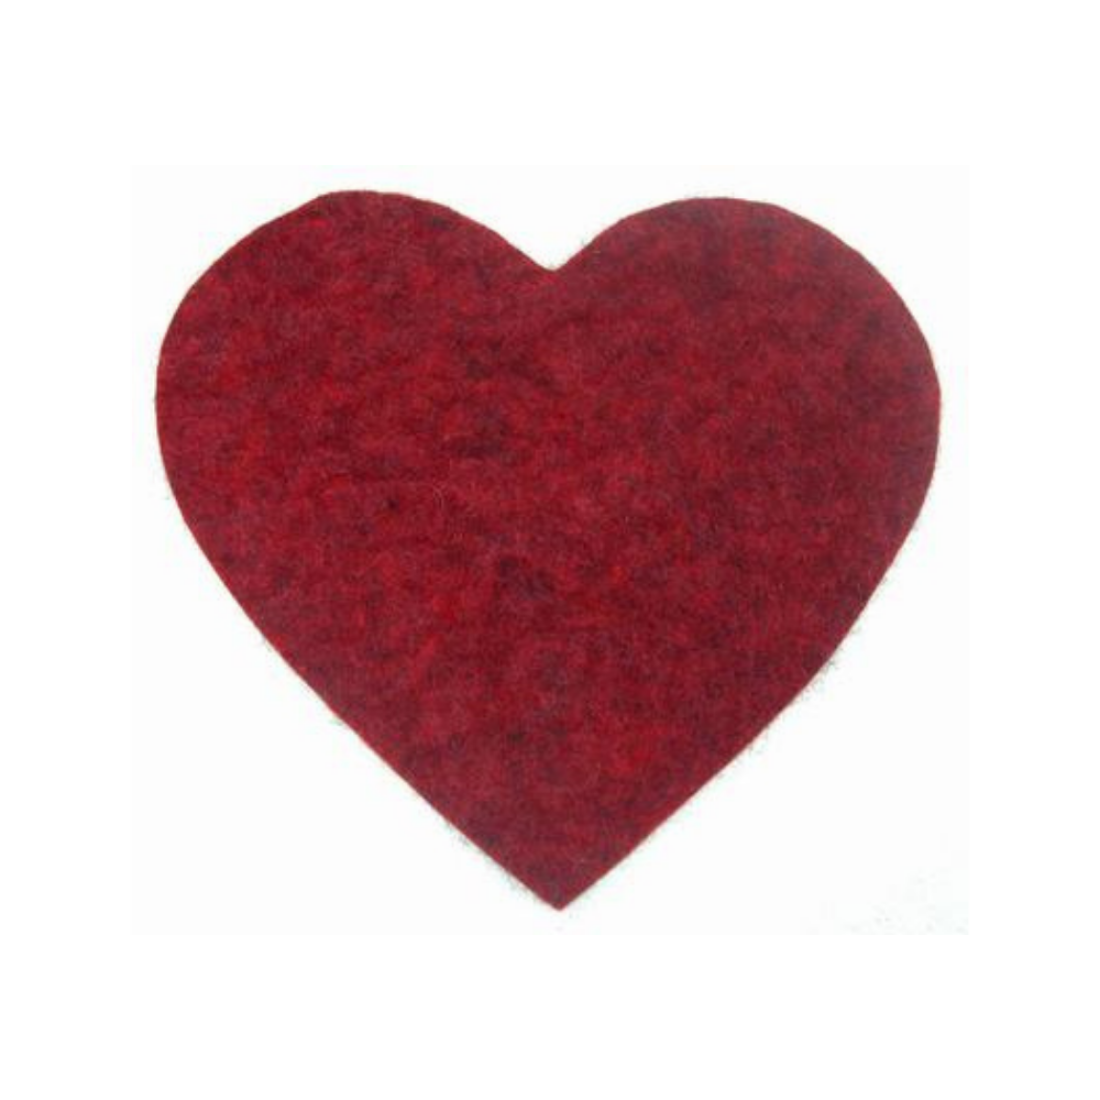 Karottunderlägg tovat fårull väldigt värmetåligt motiv av rött hjärta